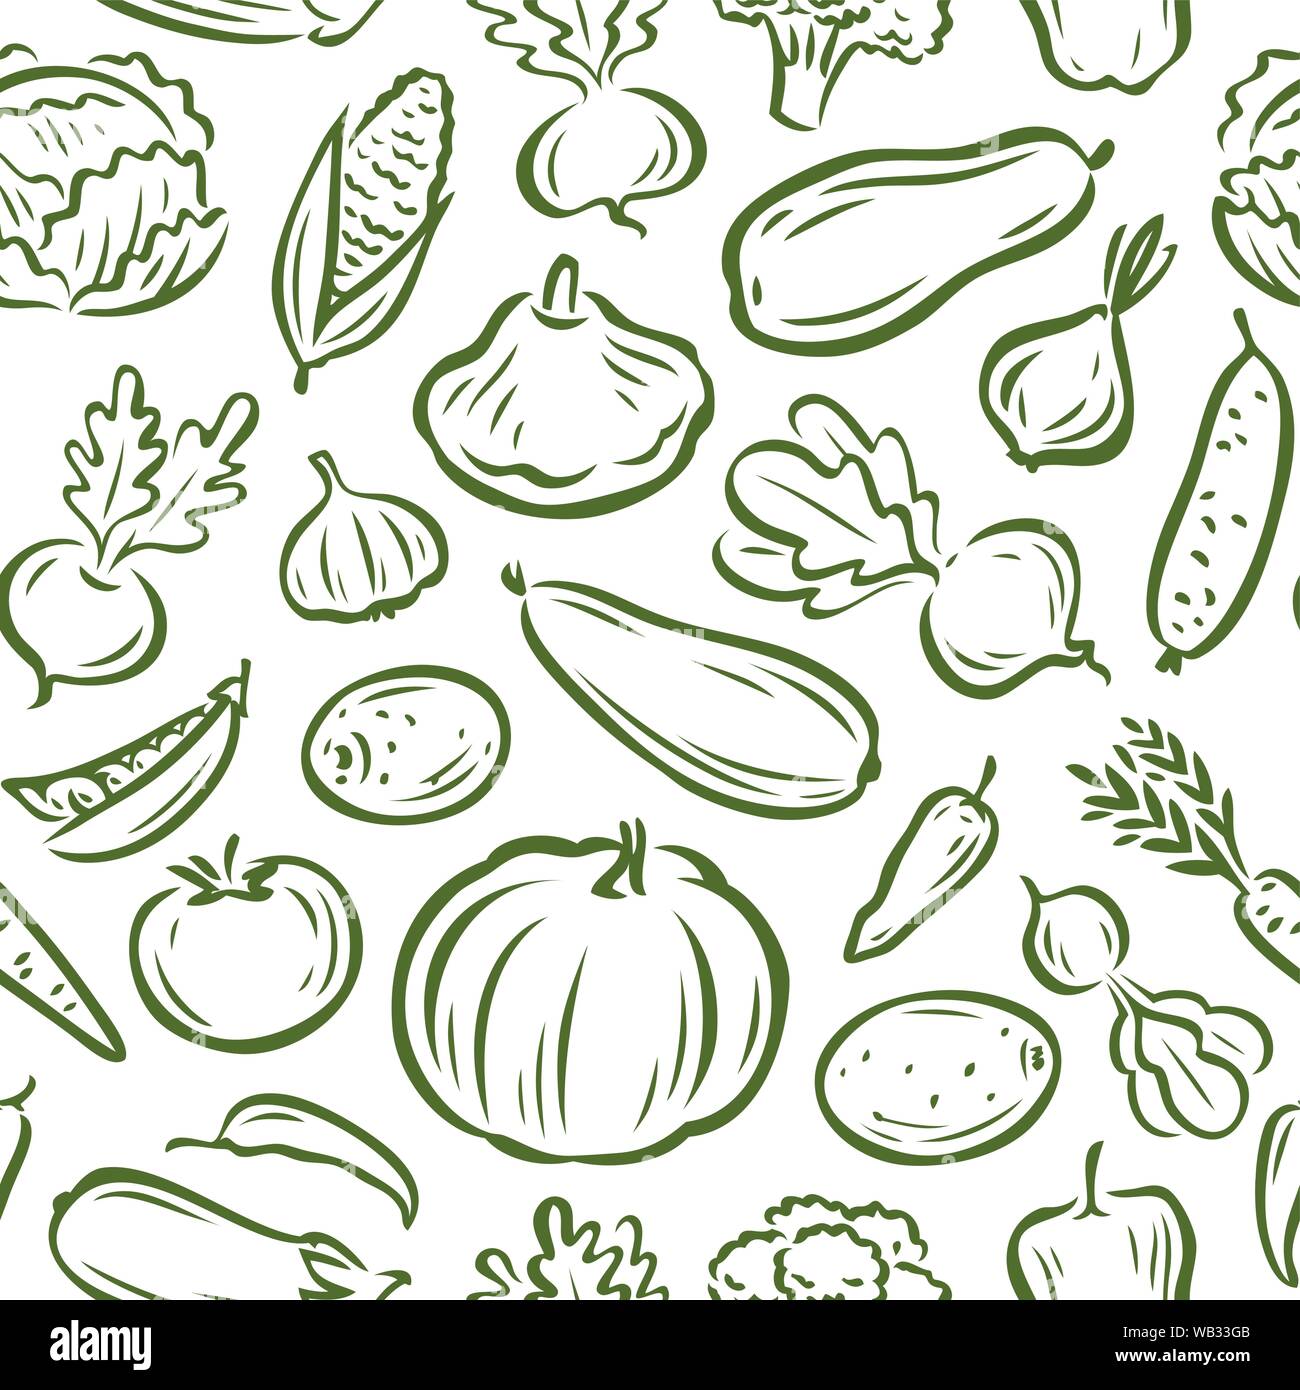 Gemüse nahtlose Hintergrund, Muster. Landwirtschaft, natürliche Lebensmittel, Landwirtschaft Vektor Stock Vektor